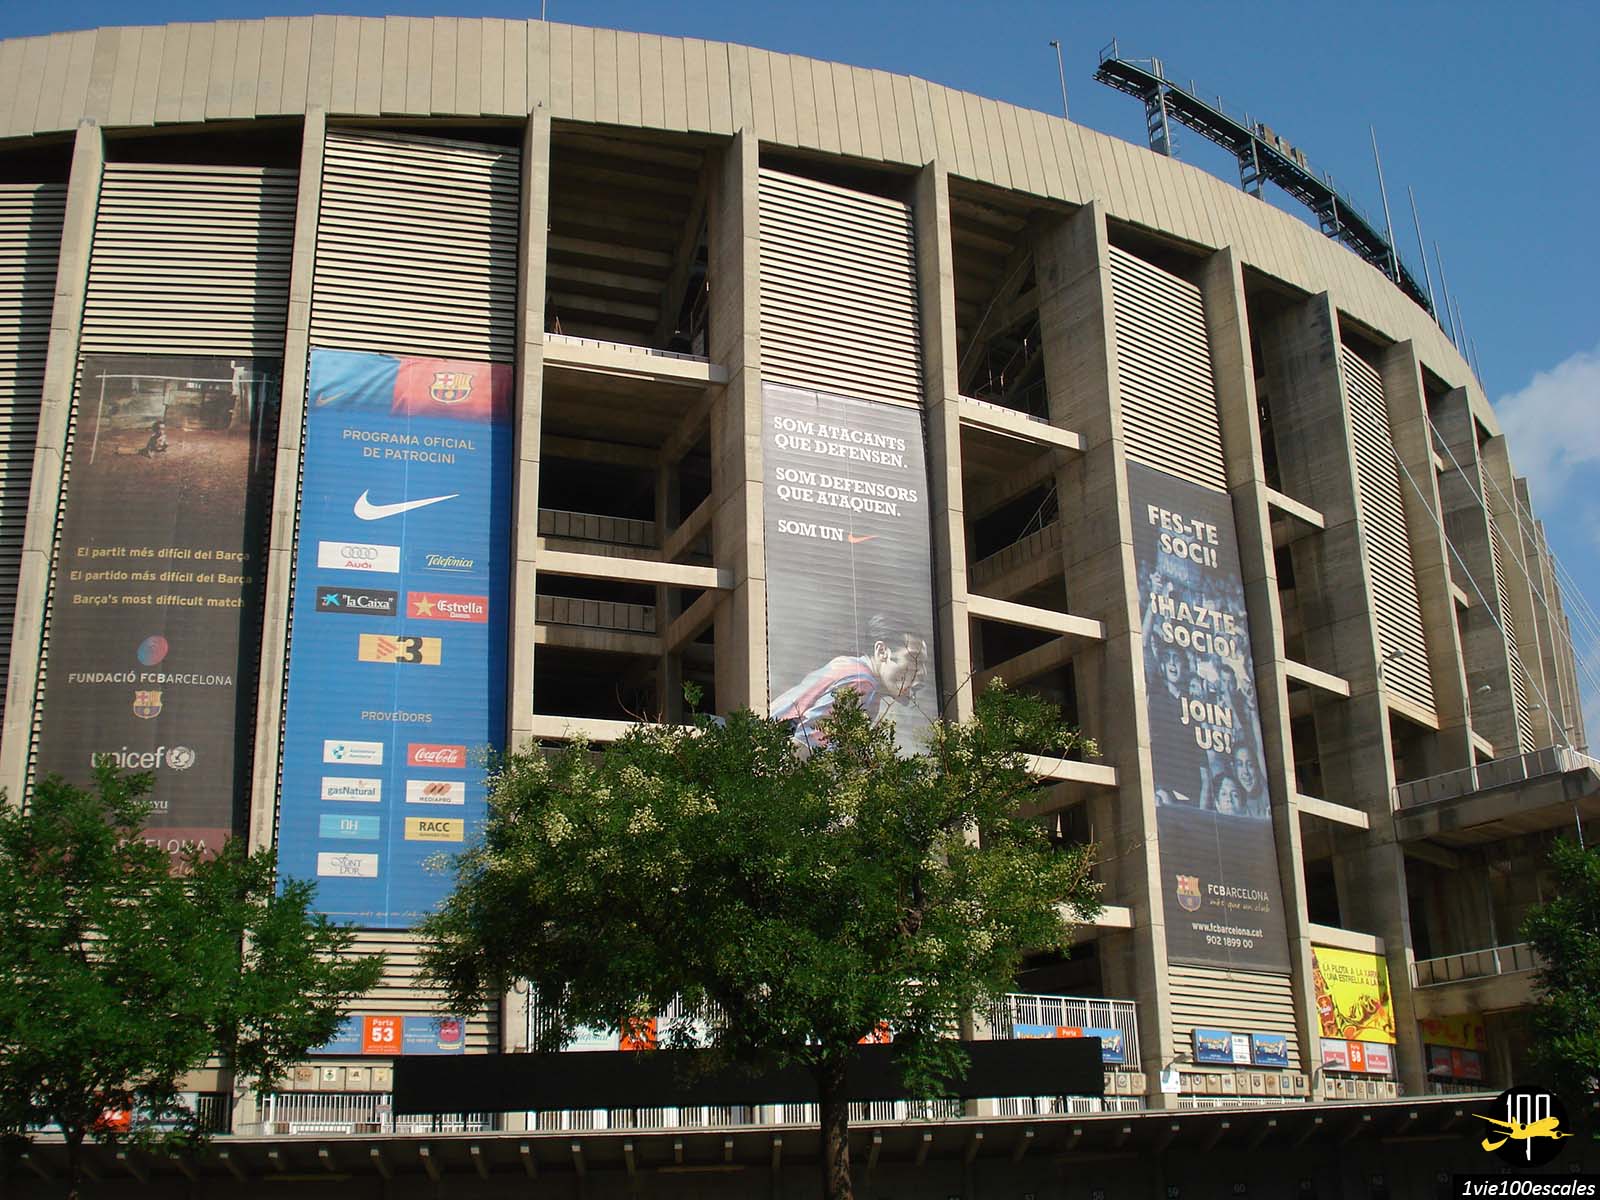 Camp Nou Experience est une visite qui permettra à tous les fans de football de découvrir le stade. La visite commence au premier étage du Musée